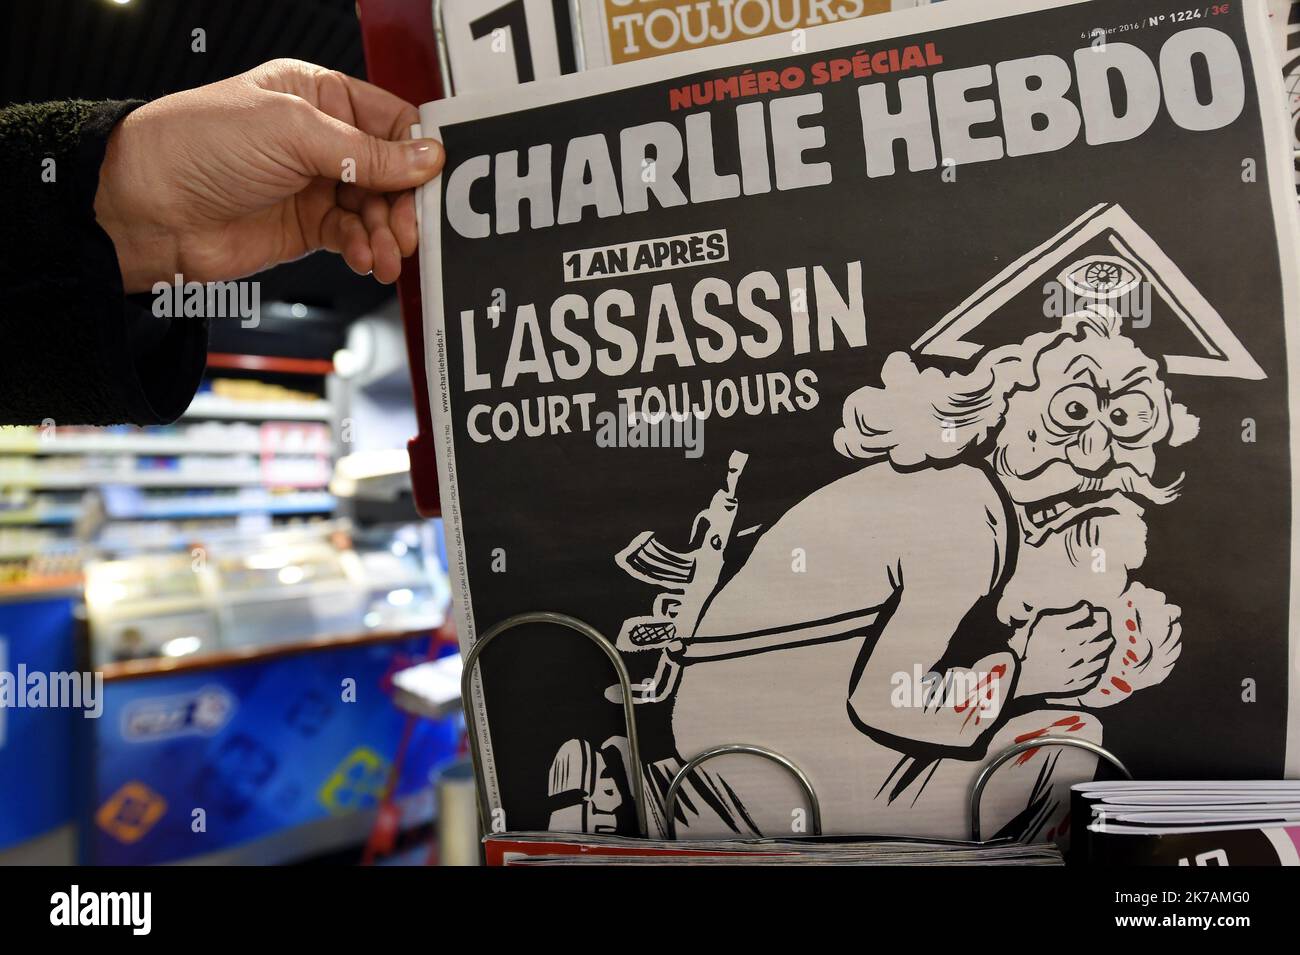 ©PHOTOPQR/L'EST REPUBLICAIN ; 02/09/2020 - France will reopen one of the worst chapters of its recent history this week when more than a dozen people go on trial accused of helping jihadist terrorists to massacre staff at the satirical magazine Charlie Hebdo. FILES PRESSE - JOURNAL - CHARLIE HEBDO - UN AN APRES - DESSINS - CARICATURES - LIBERTE D'EXPRESSION - LIBERTE DE LA PRESSE - KIOSQUE - TERRORISME - ATTENTAT - ETAT ISLAMIQUE - EI - DAESH. Nancy 6 janvier 2016. Le numéro spécial de CHARLIE HEBDO un an après l'attentat du 7 janvier 2015 avec le titre 'L'assassin court toujours' et un dessi Stock Photo